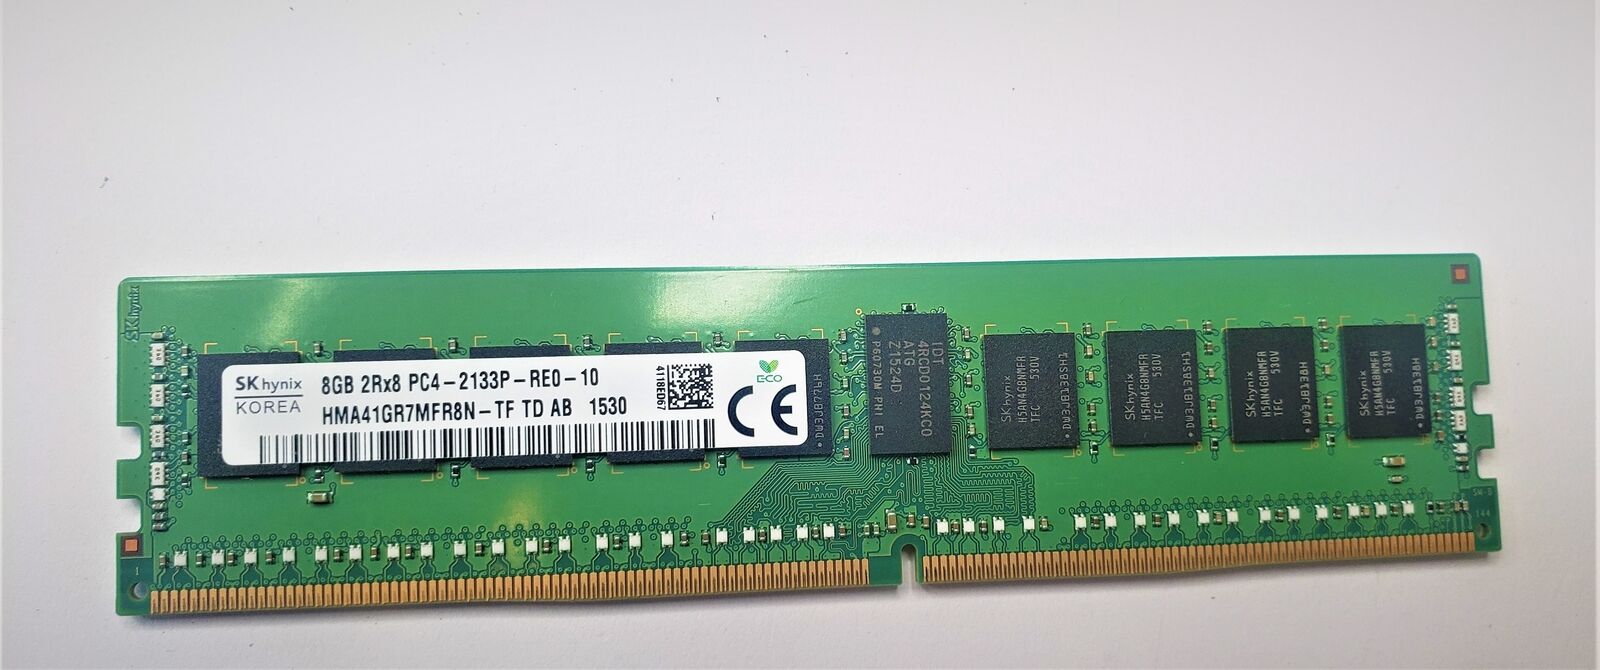 Samsung Skhynix 8GB 2Rx8 DRR4 Memory Card PC4-2133P-RE0-10 HMA41GR7MFR8N-TF1530